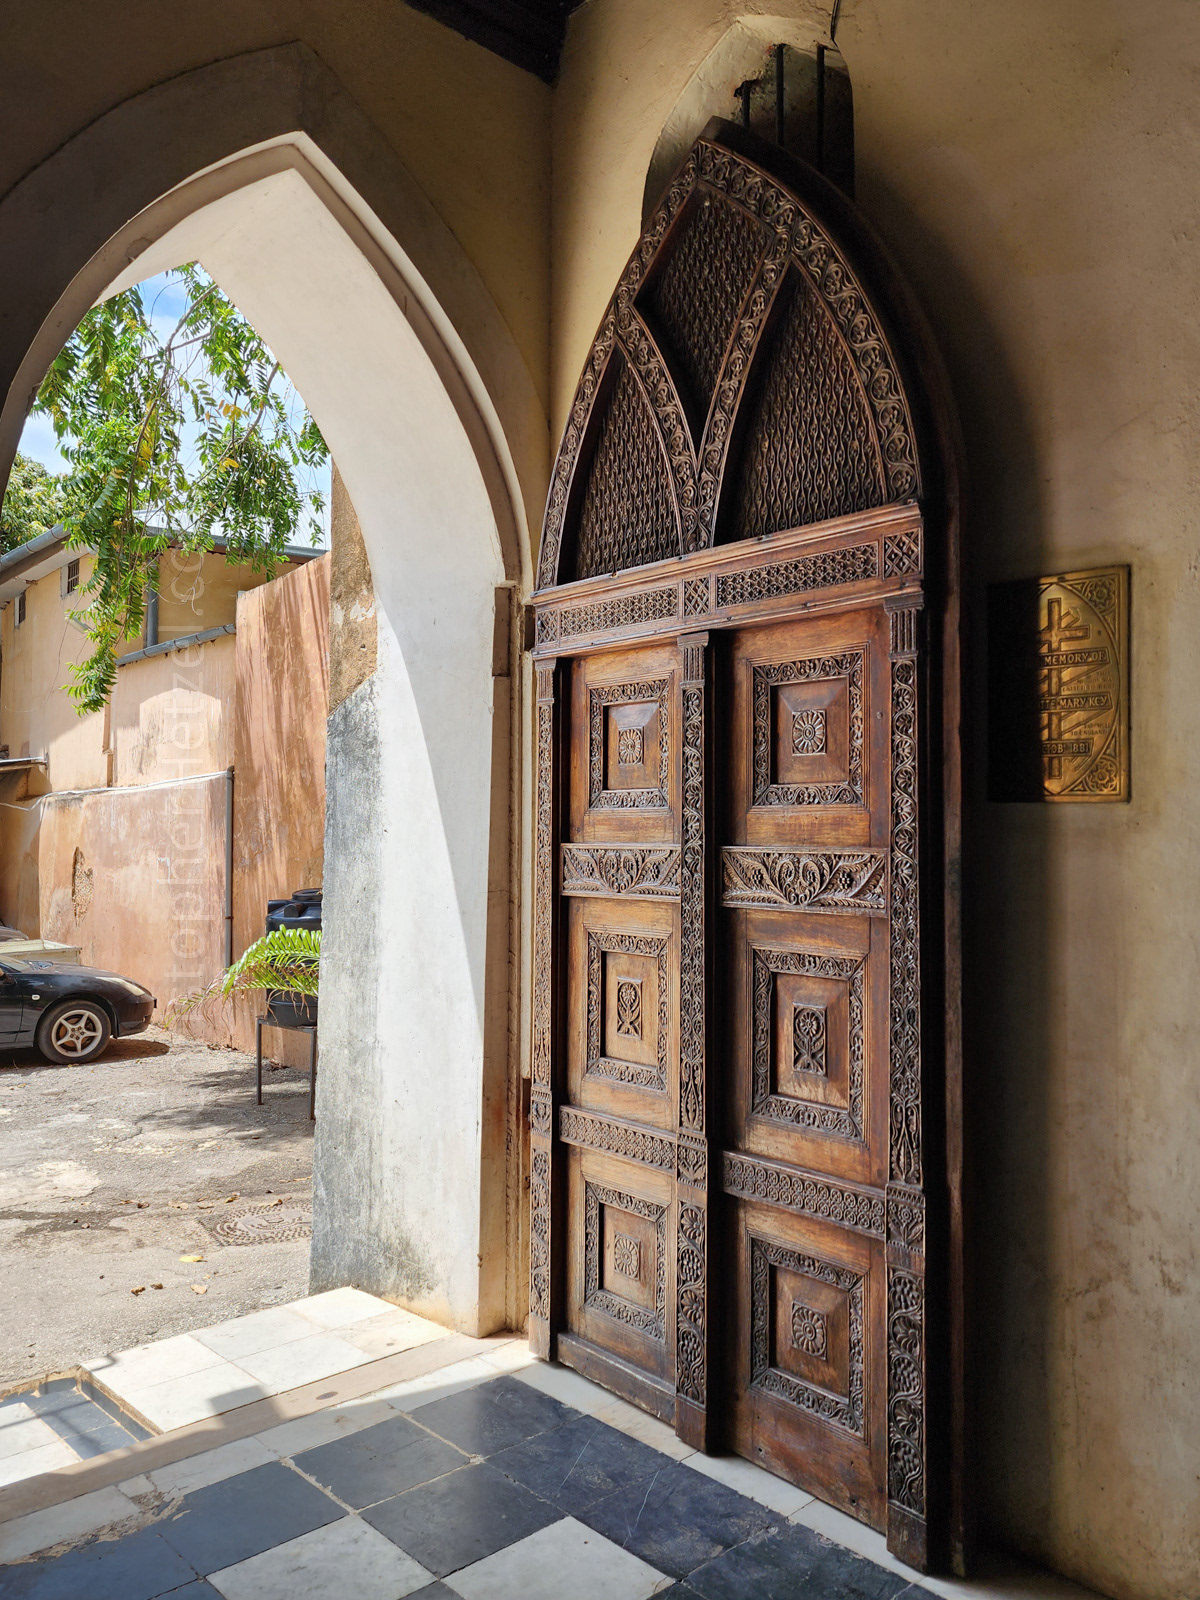 C. Hetzel Photography - Doors of Zanzibar